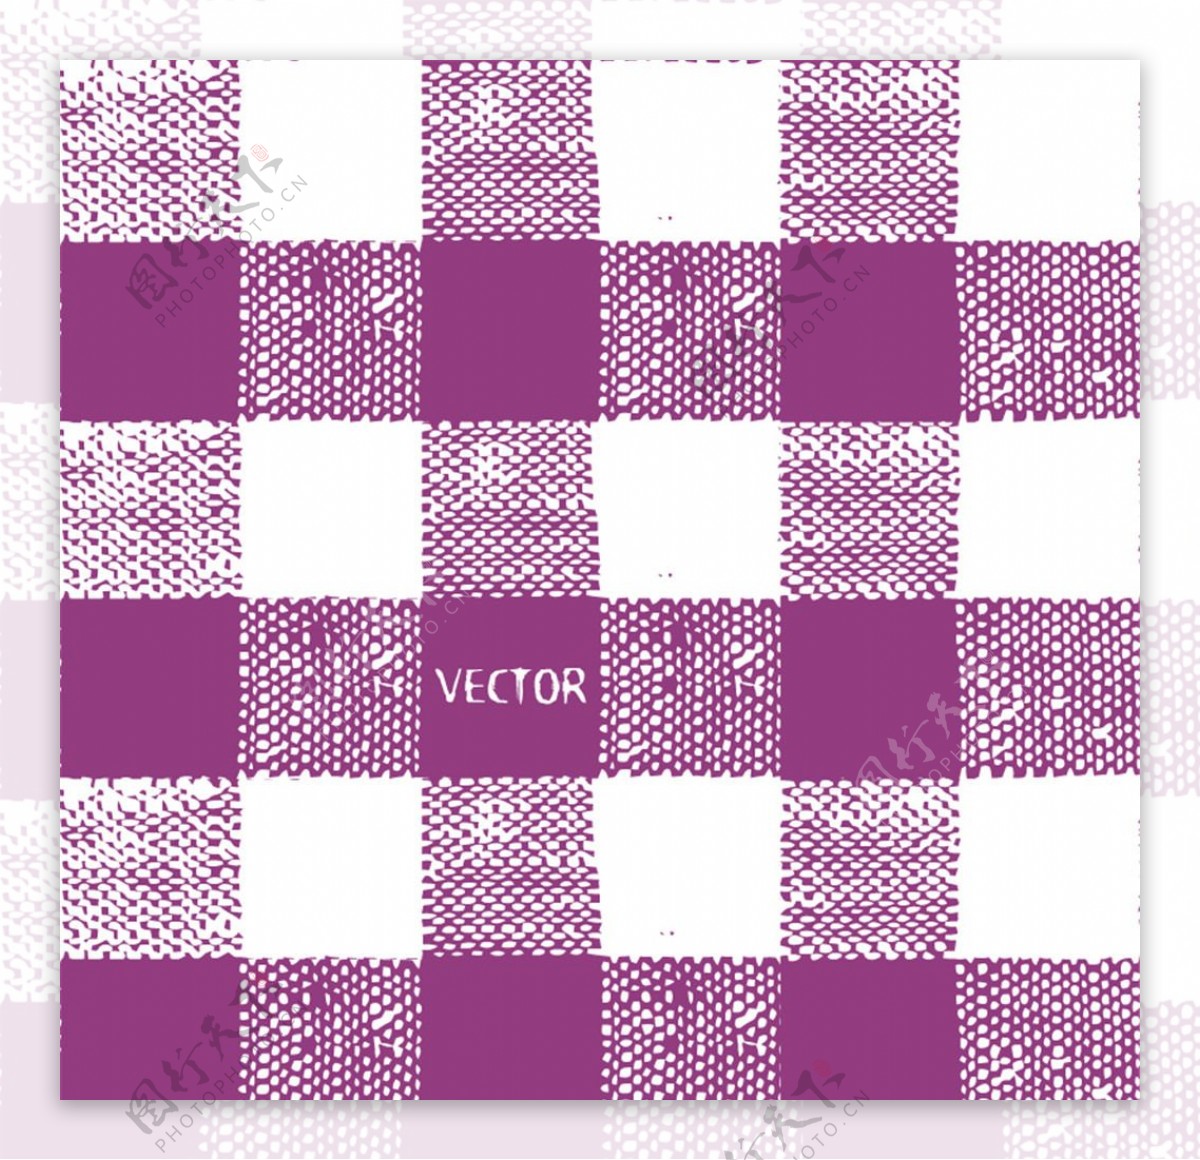 紫色与白色格子背景矢量素材